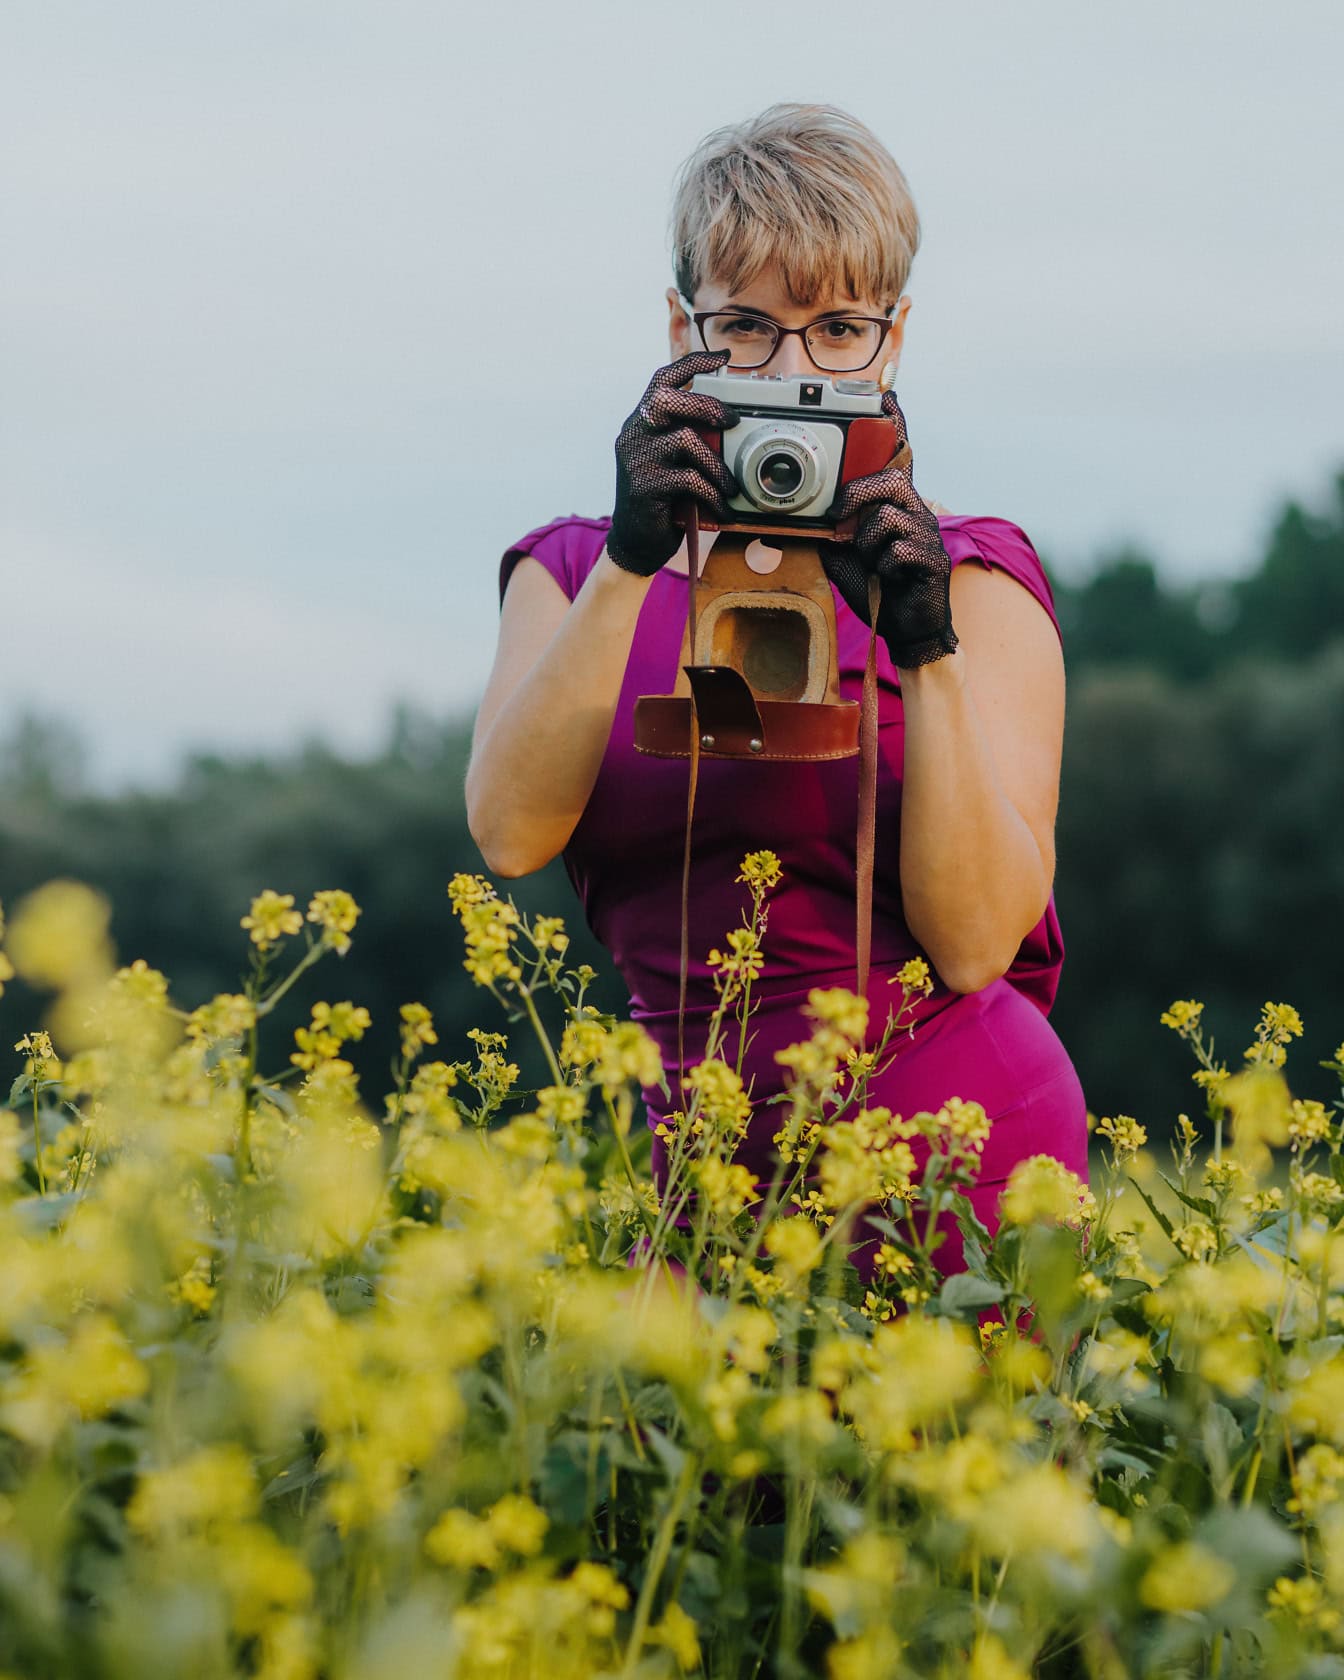 보라색 드레스와 레이스 장갑을 낀 여자가 노란 꽃밭에서 아날로그 오래 된 카메라를 들고 있습니다.